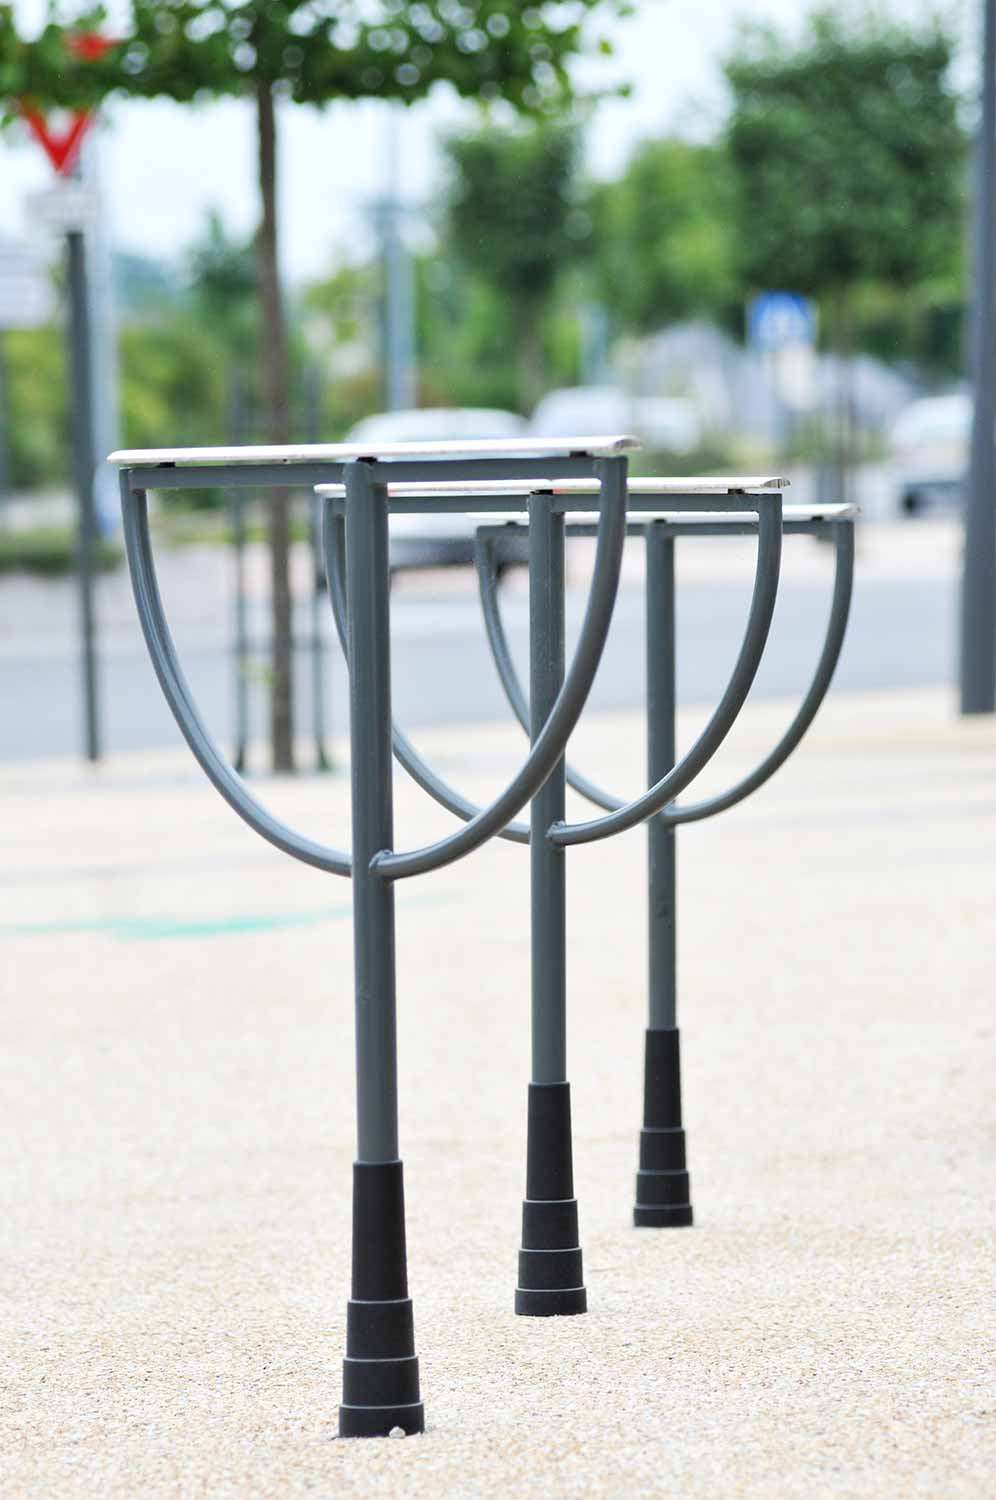 Appui vélos METROPOLIS conçu et fabriqué par Aréa mobilier urbain